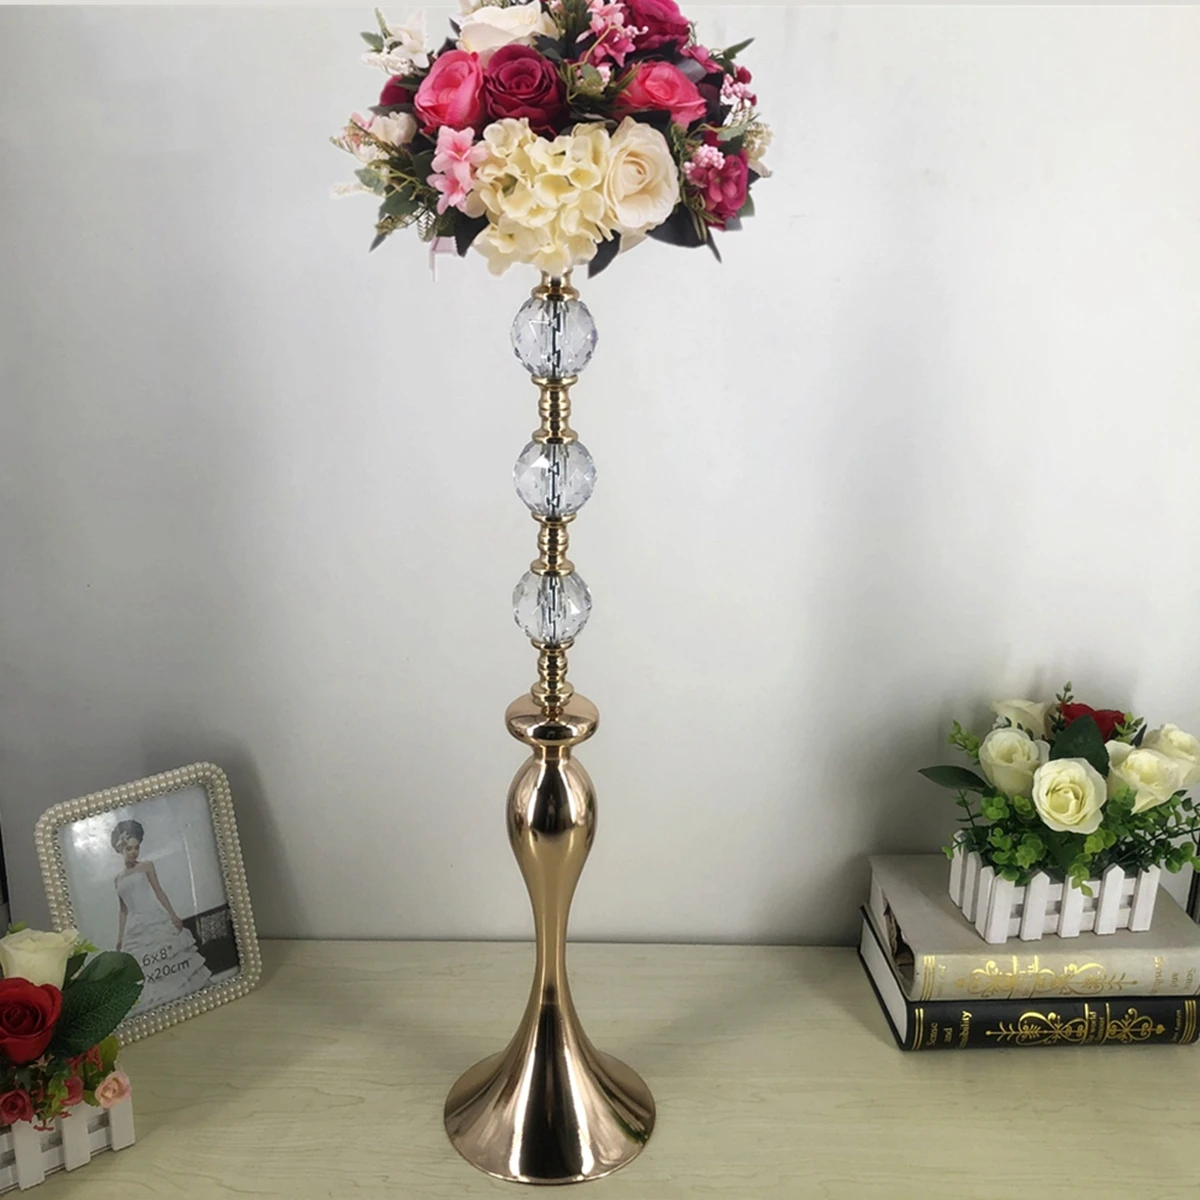 

13 шт.) вазы 60 см высотой, металлическая настольная ваза, центральный элемент свадьбы, дорожный свинцовый цветочный стеллаж для украшения 107